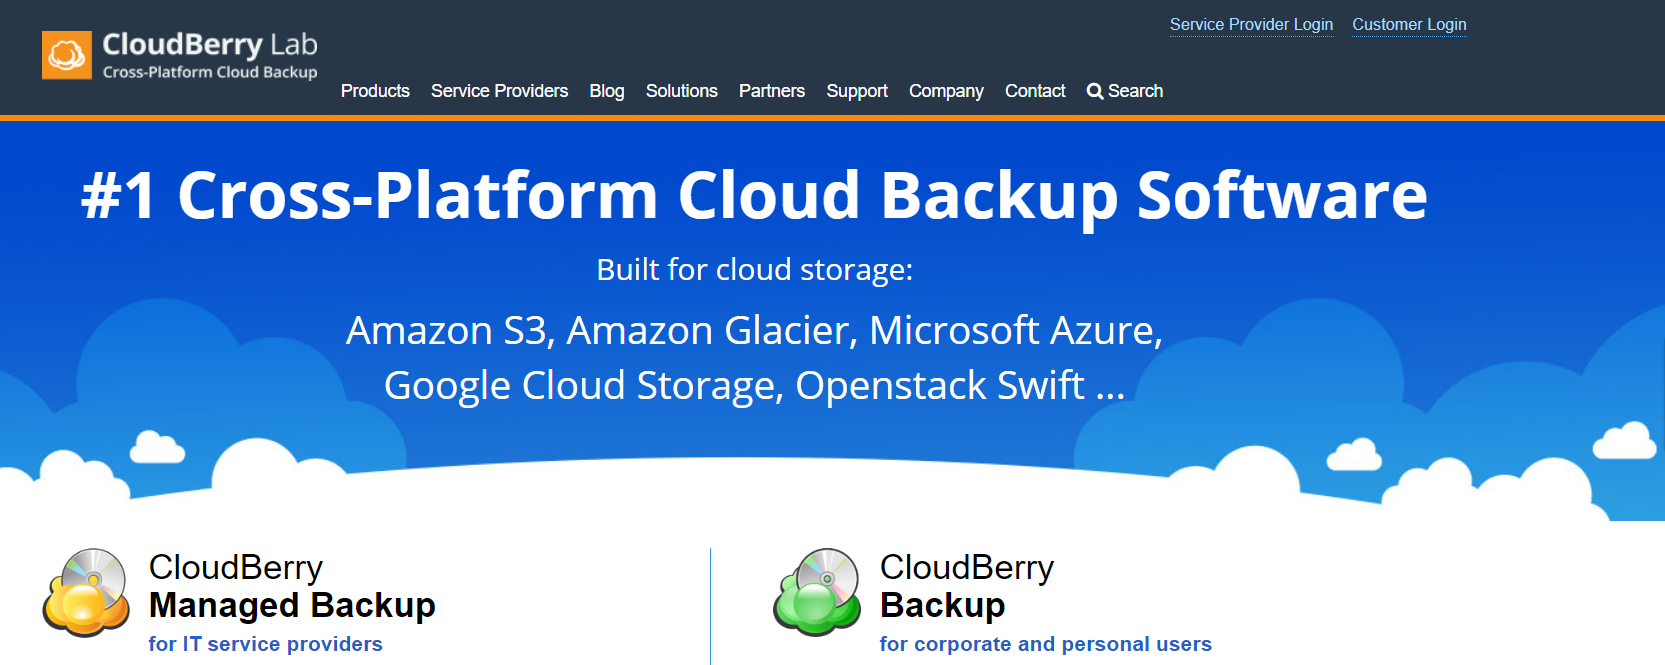 CloudBerry Backup - Meilleur service de sauvegarde cloud pour Mac